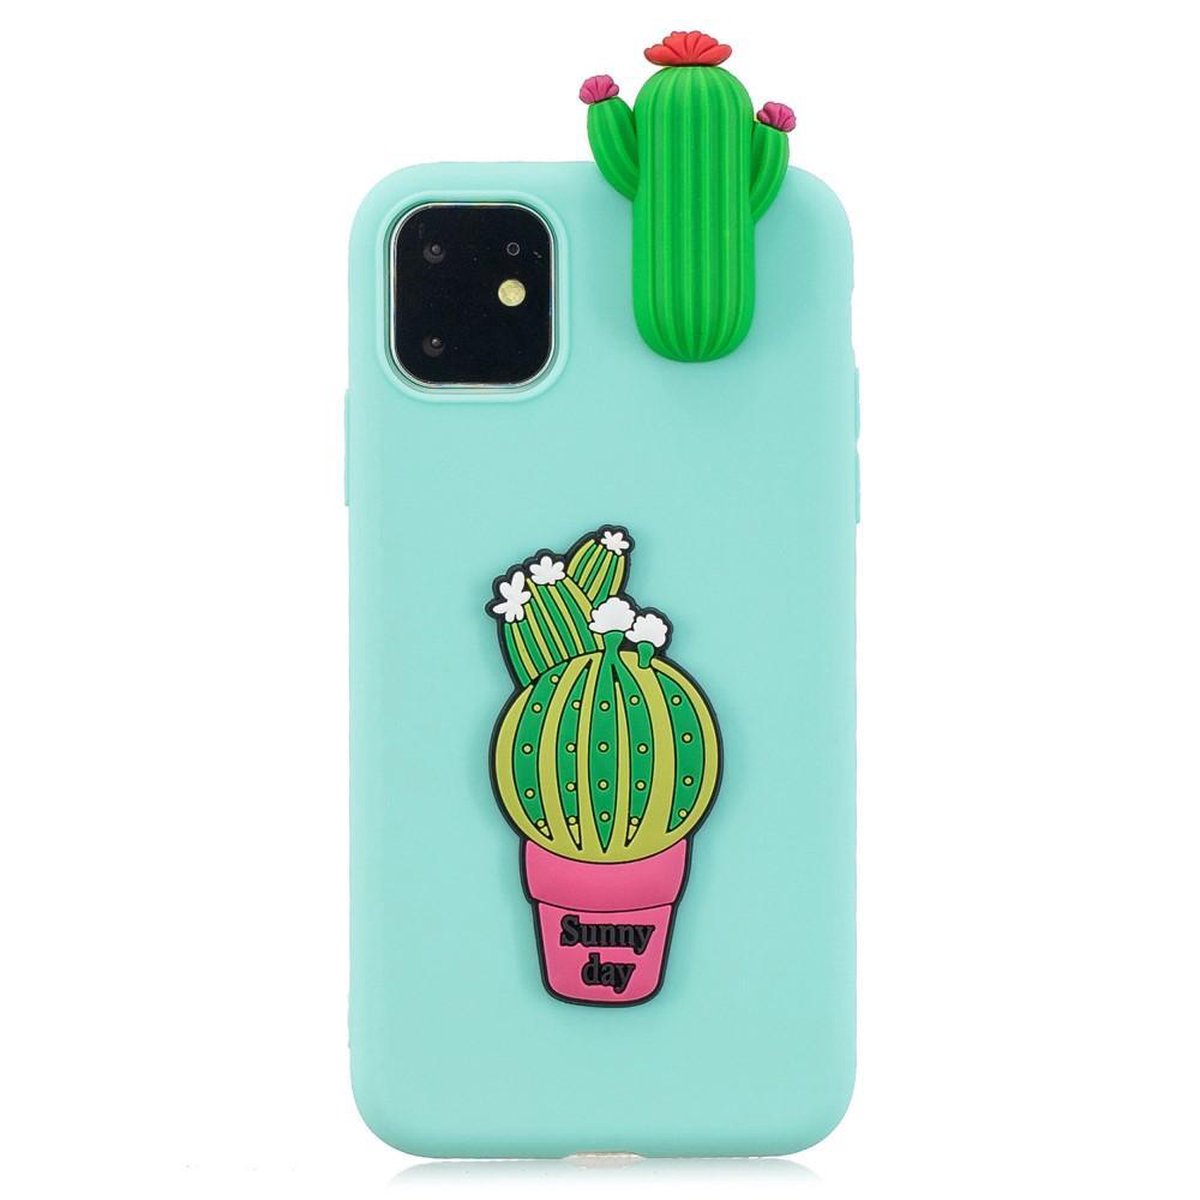 Speelse softcase met 3D cactussen voor iPhone 11 6.1 inch - Groen